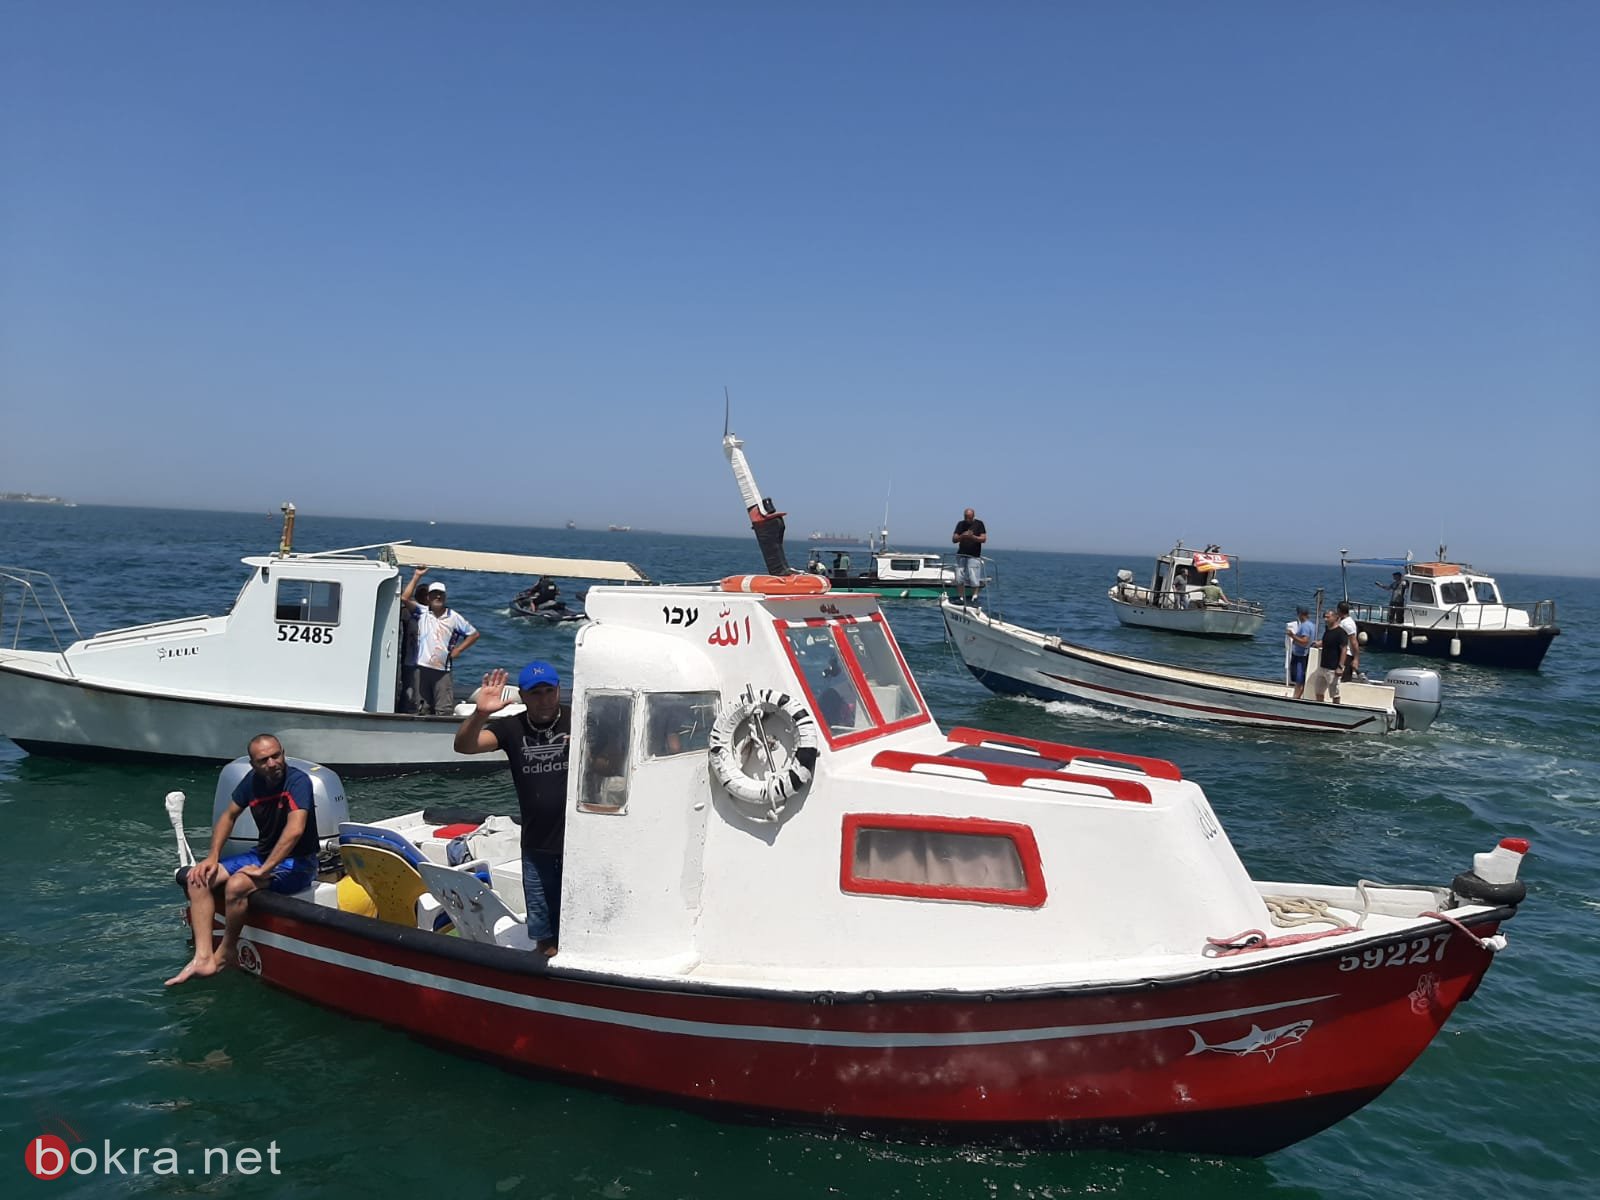 150 صياد يتظاهرون احتجاجا على حظر الصيد  أعيدوا لنا البحر!-0